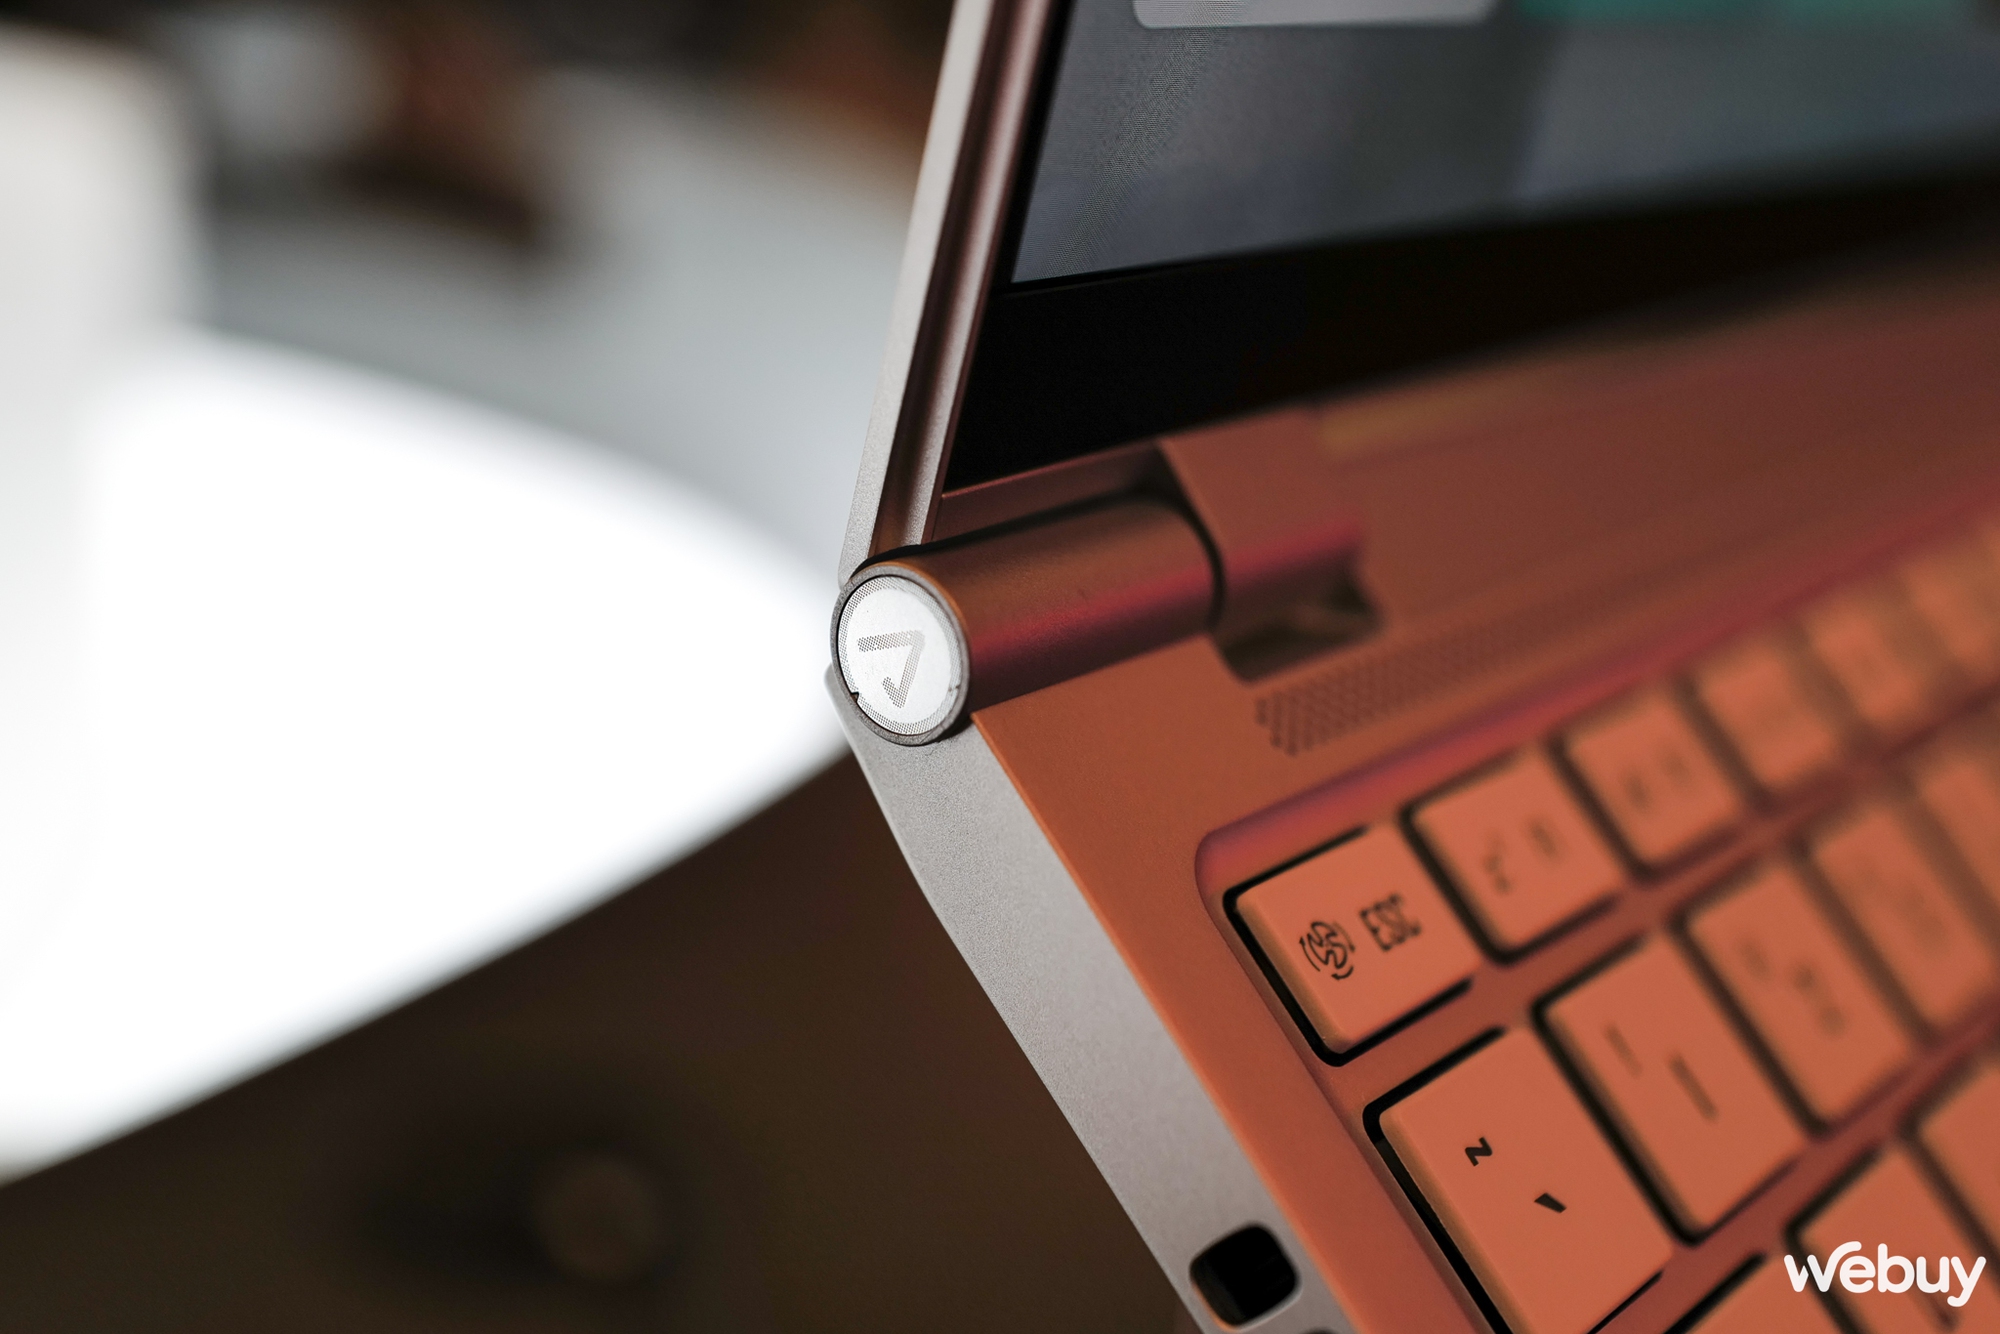 Trên tay bộ 4 laptop Gigabyte AORUS: Đa dạng về kích thước và công nghệ - Ảnh 2.